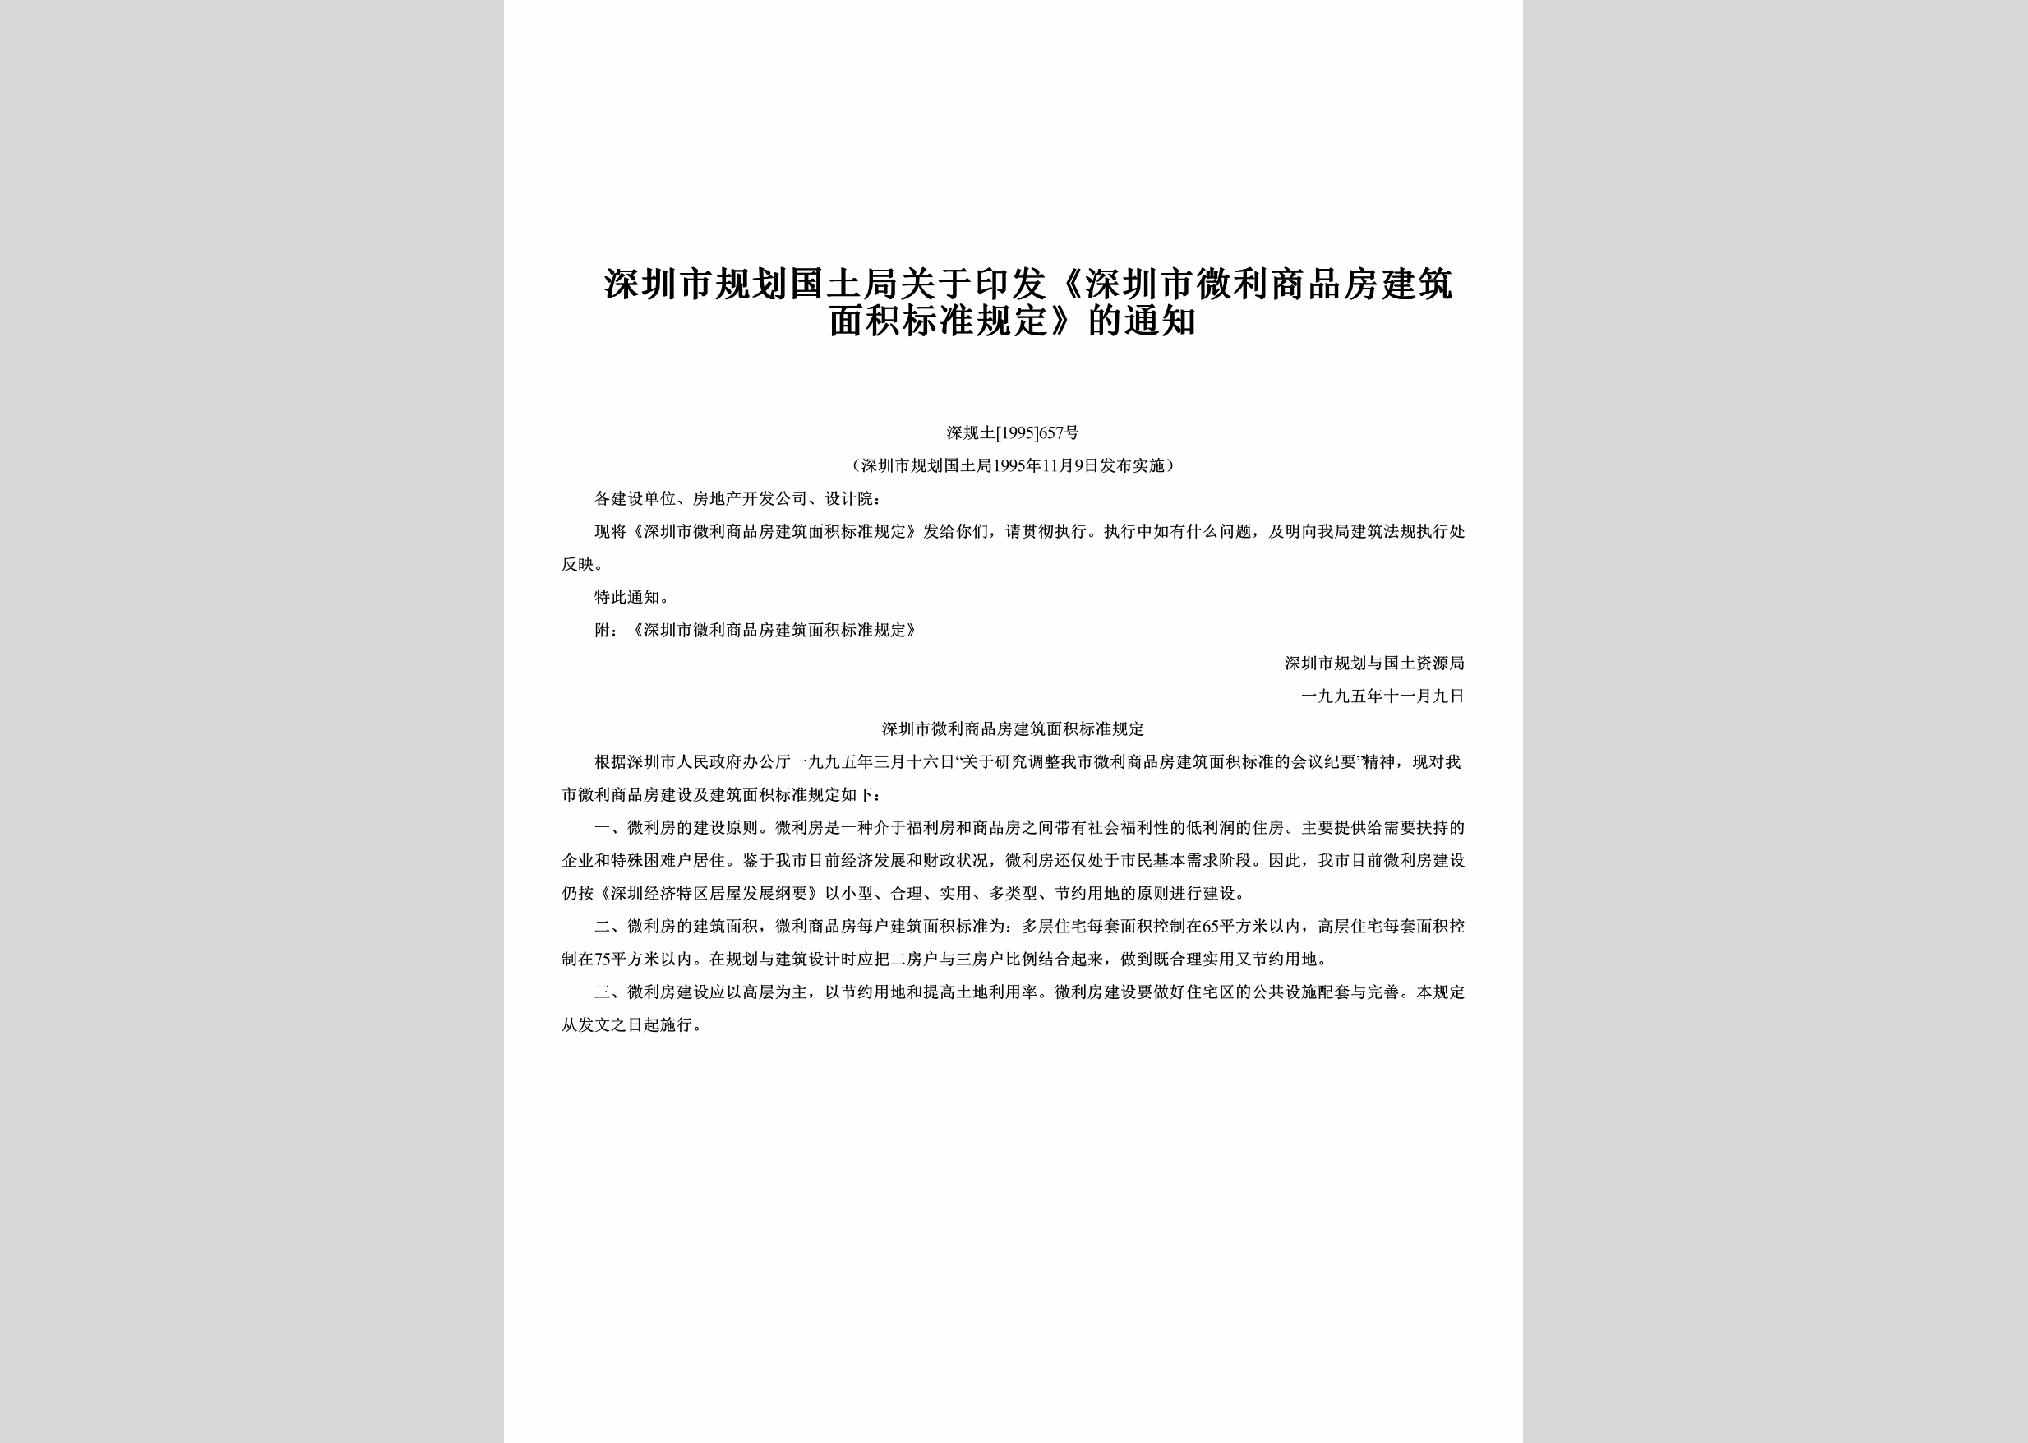 深规土[1995]657号：关于印发《深圳市微利商品房建筑面积标准规定》的通知